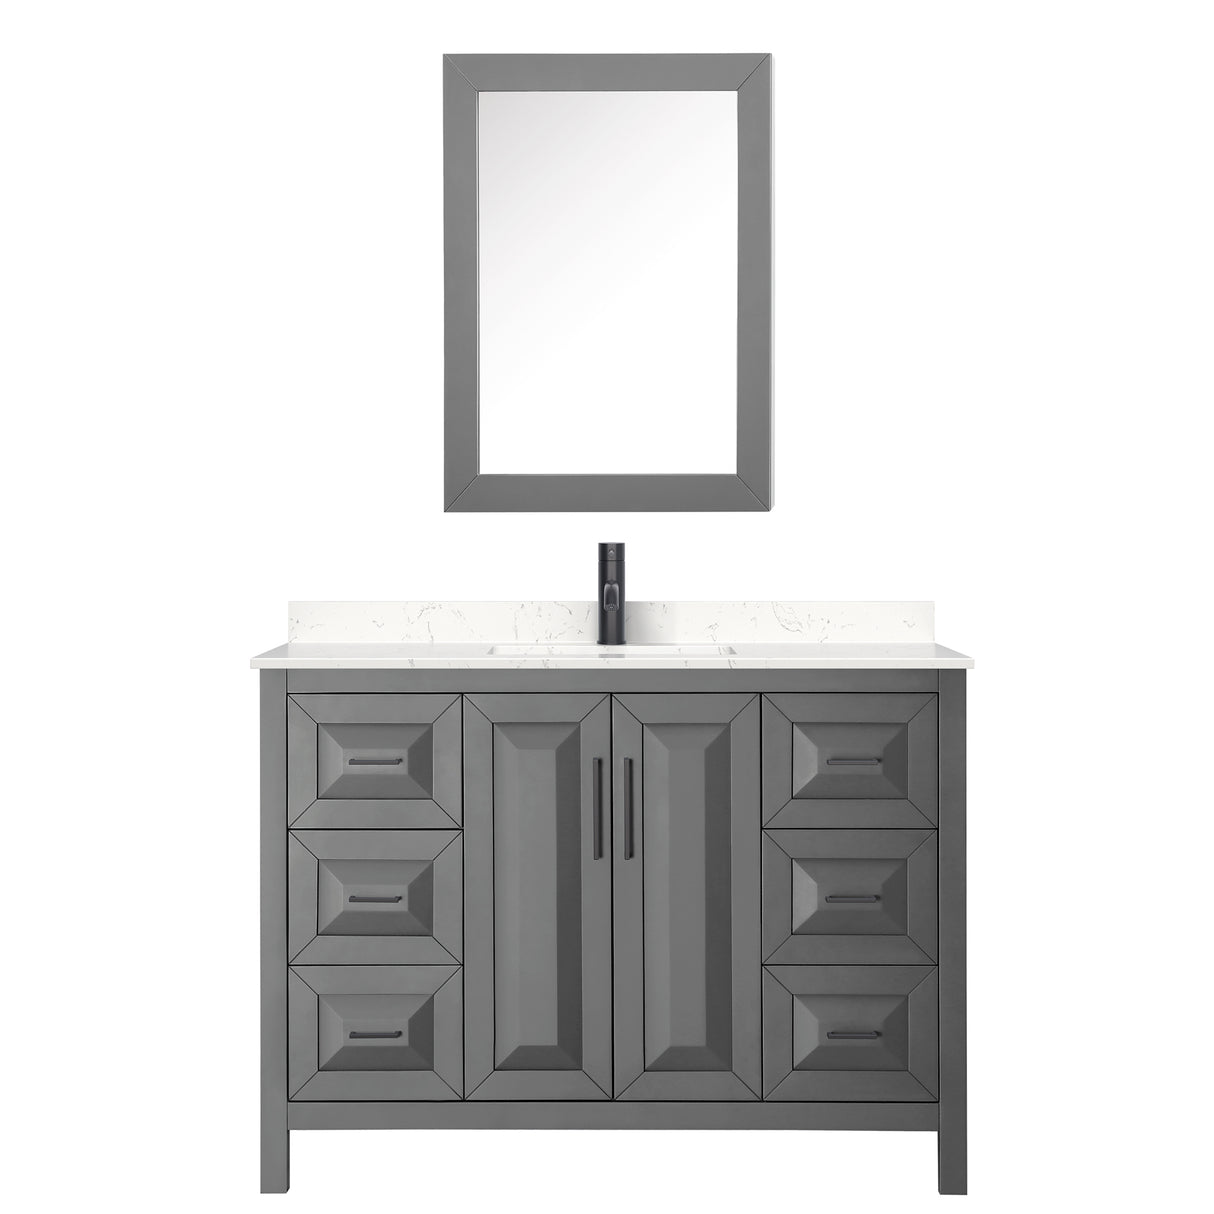 Daria 48 Inch Single Bathroom Vanity in Dark Gray Carrara Cultured Marble Countertop Undermount Square Sink Matte Black Trim Medicine Cabinet